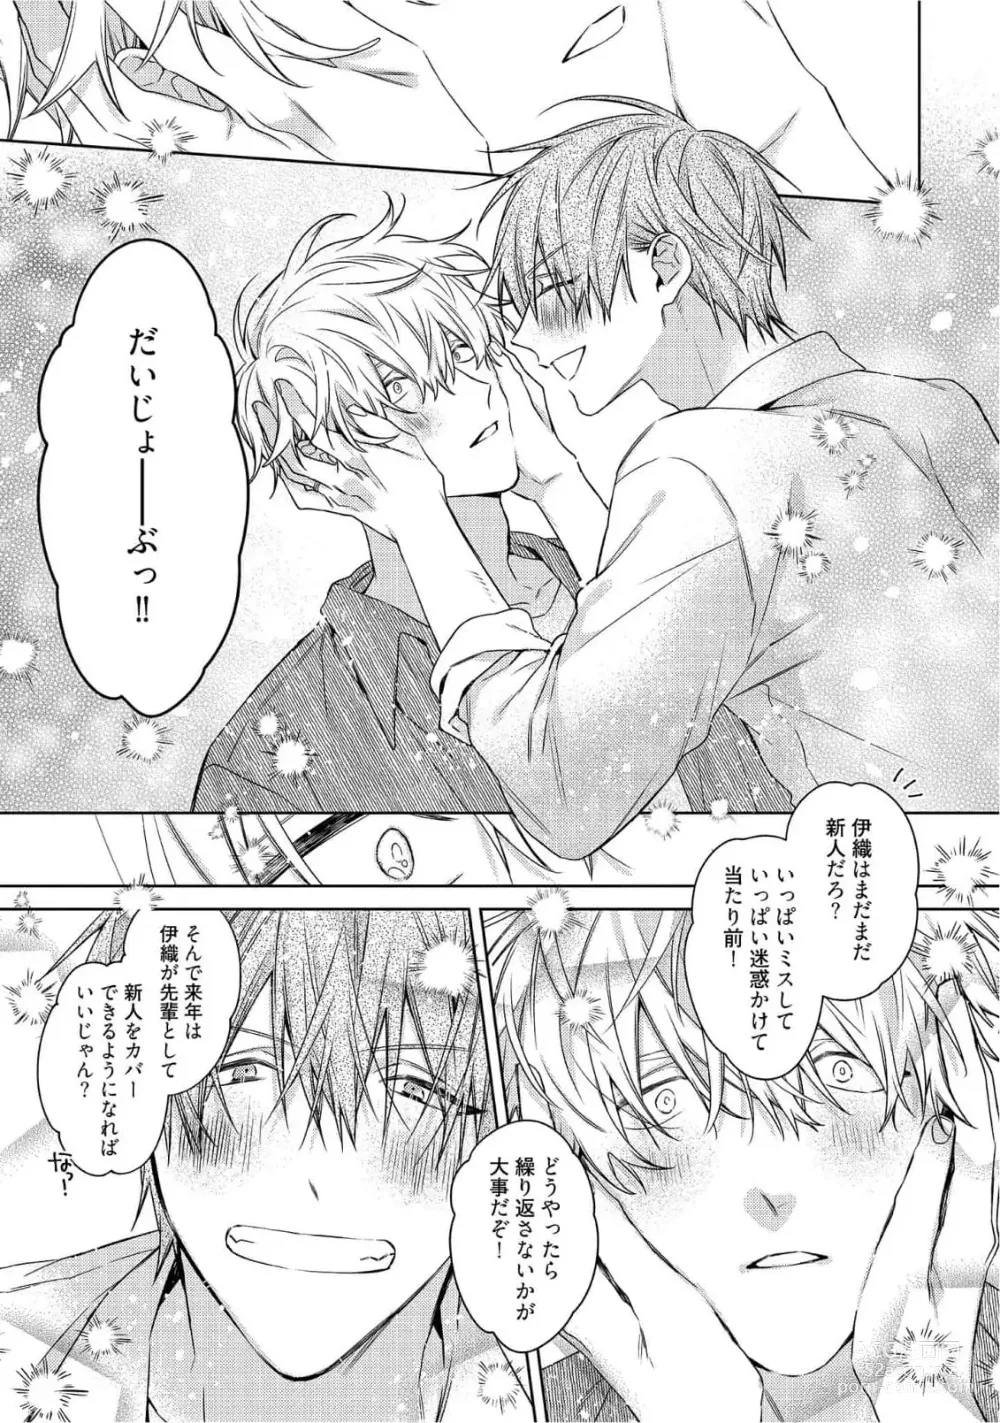 Page 269 of manga Motto! Ecchi wa shuu 7 Kibou Desu!